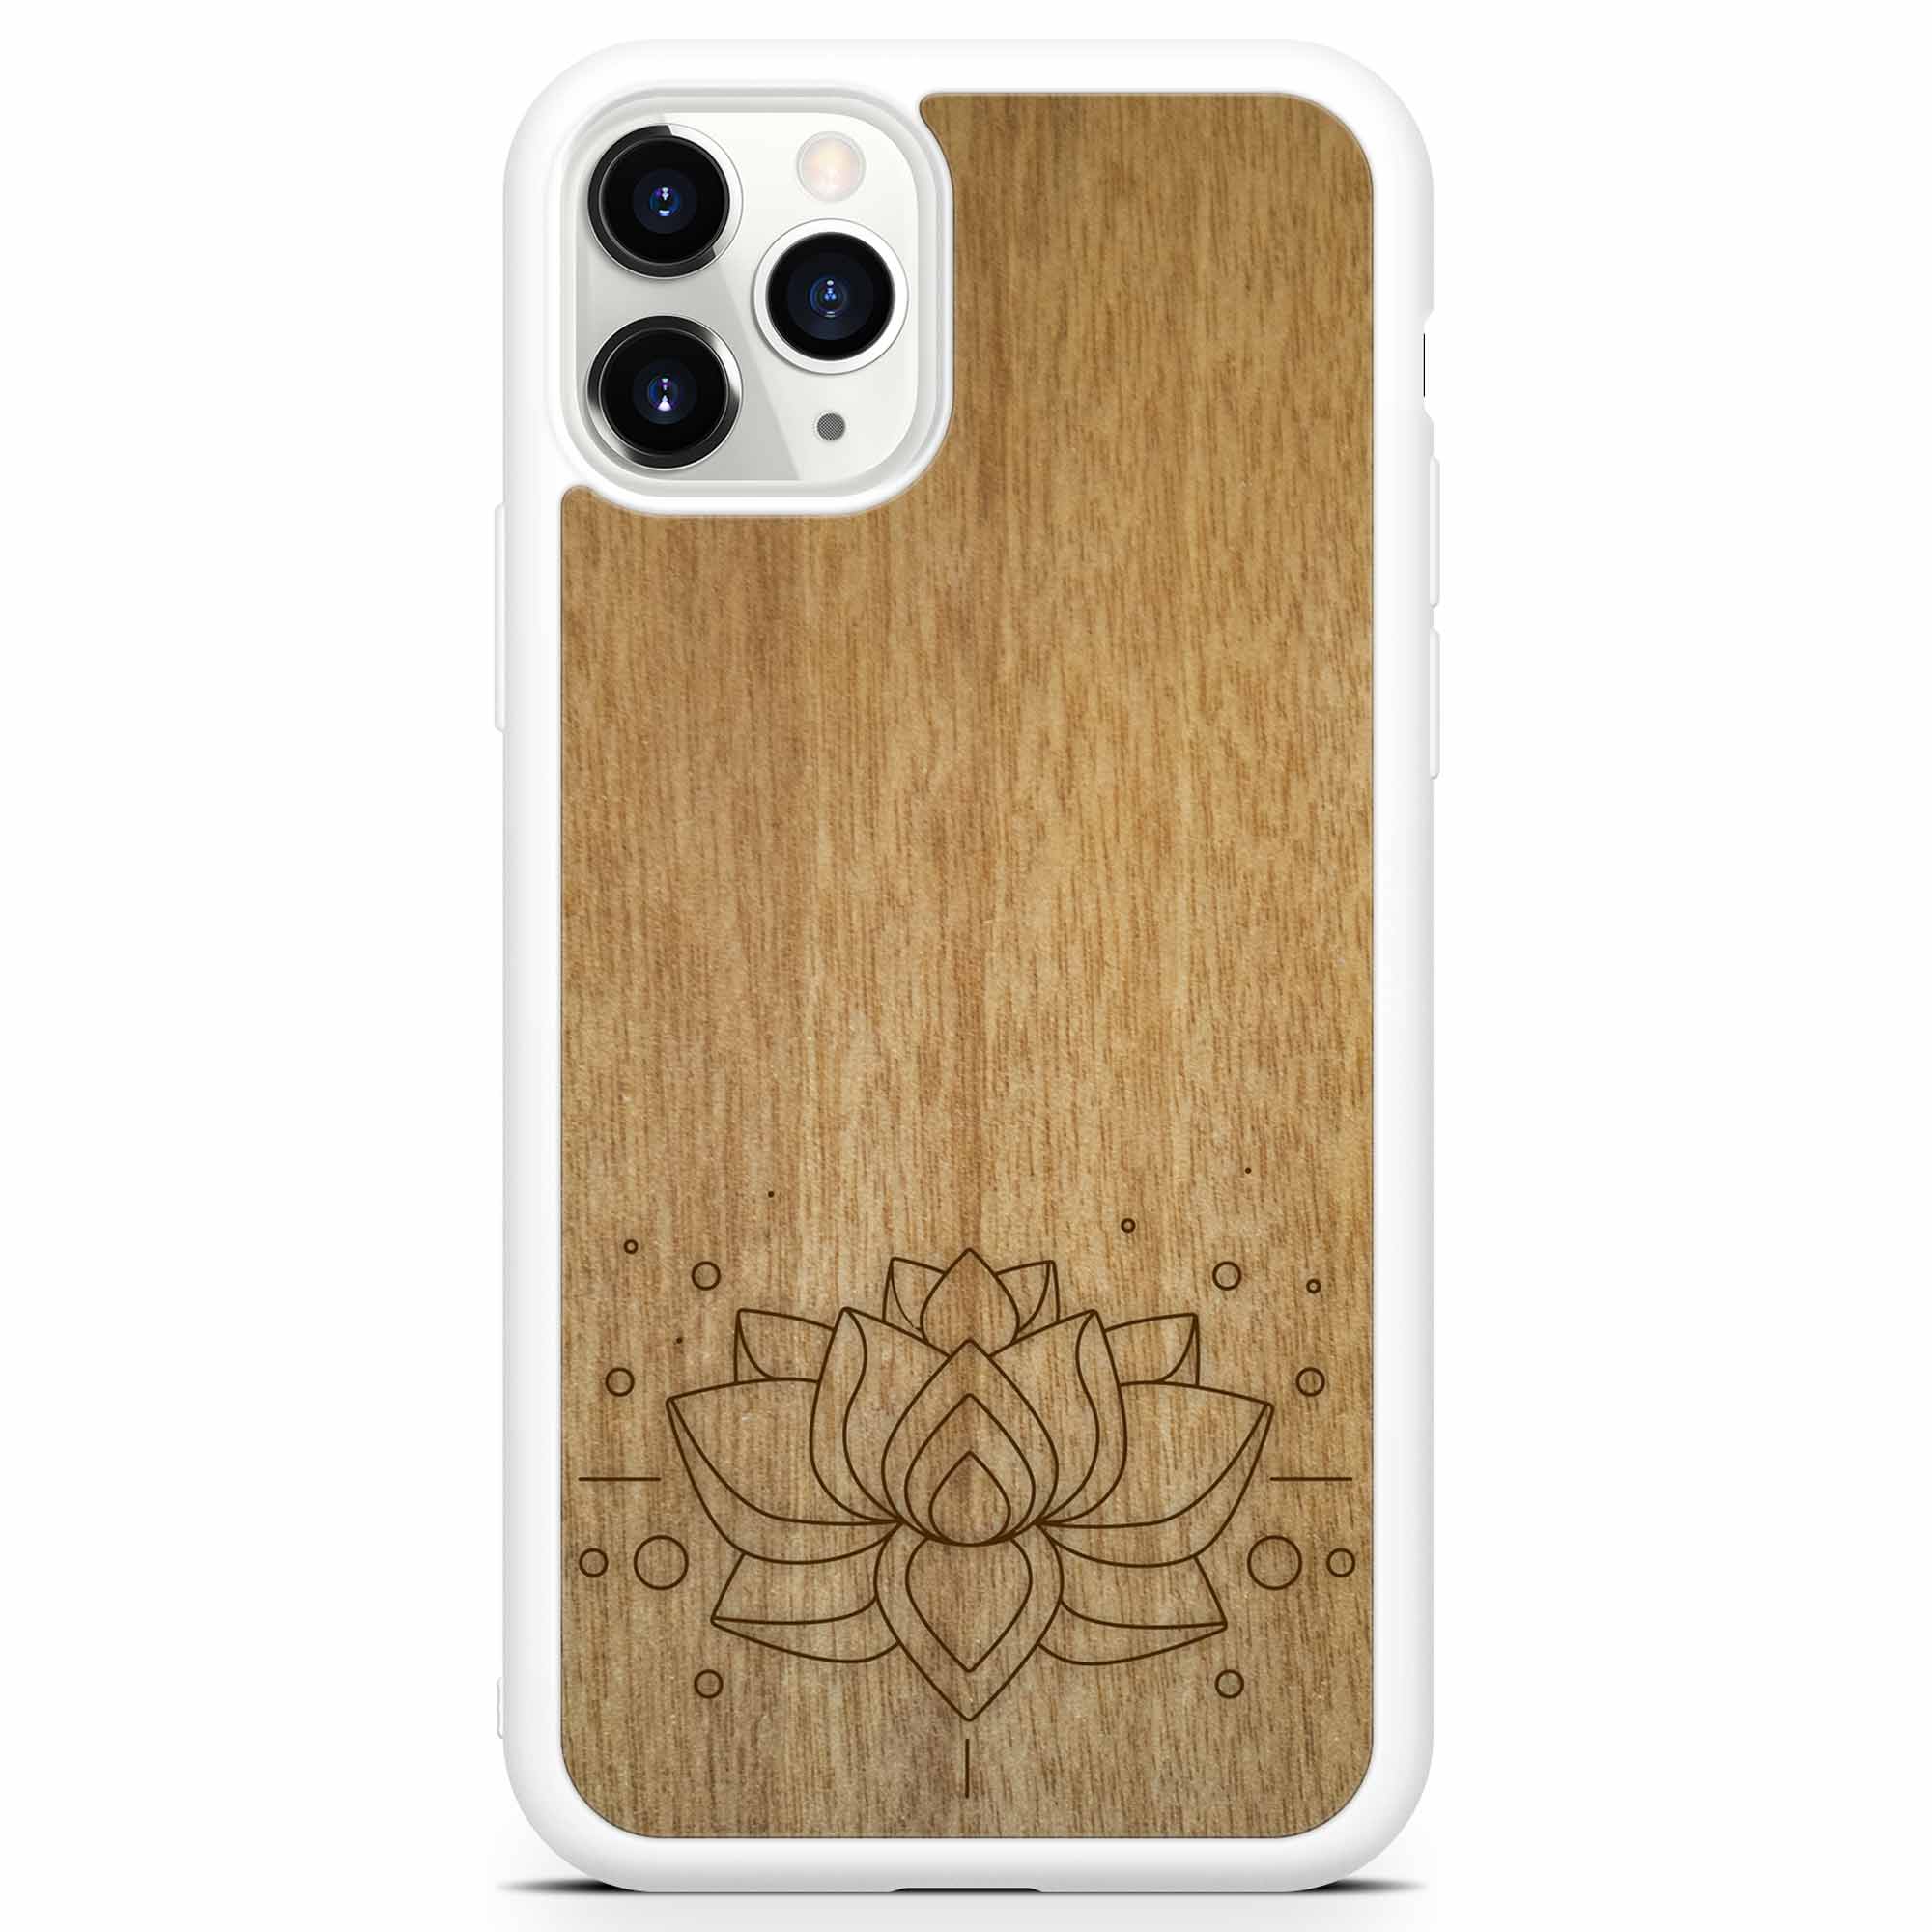 Coque de portable blanche en bois de lotus gravée pour iPhone 11 Pro Max